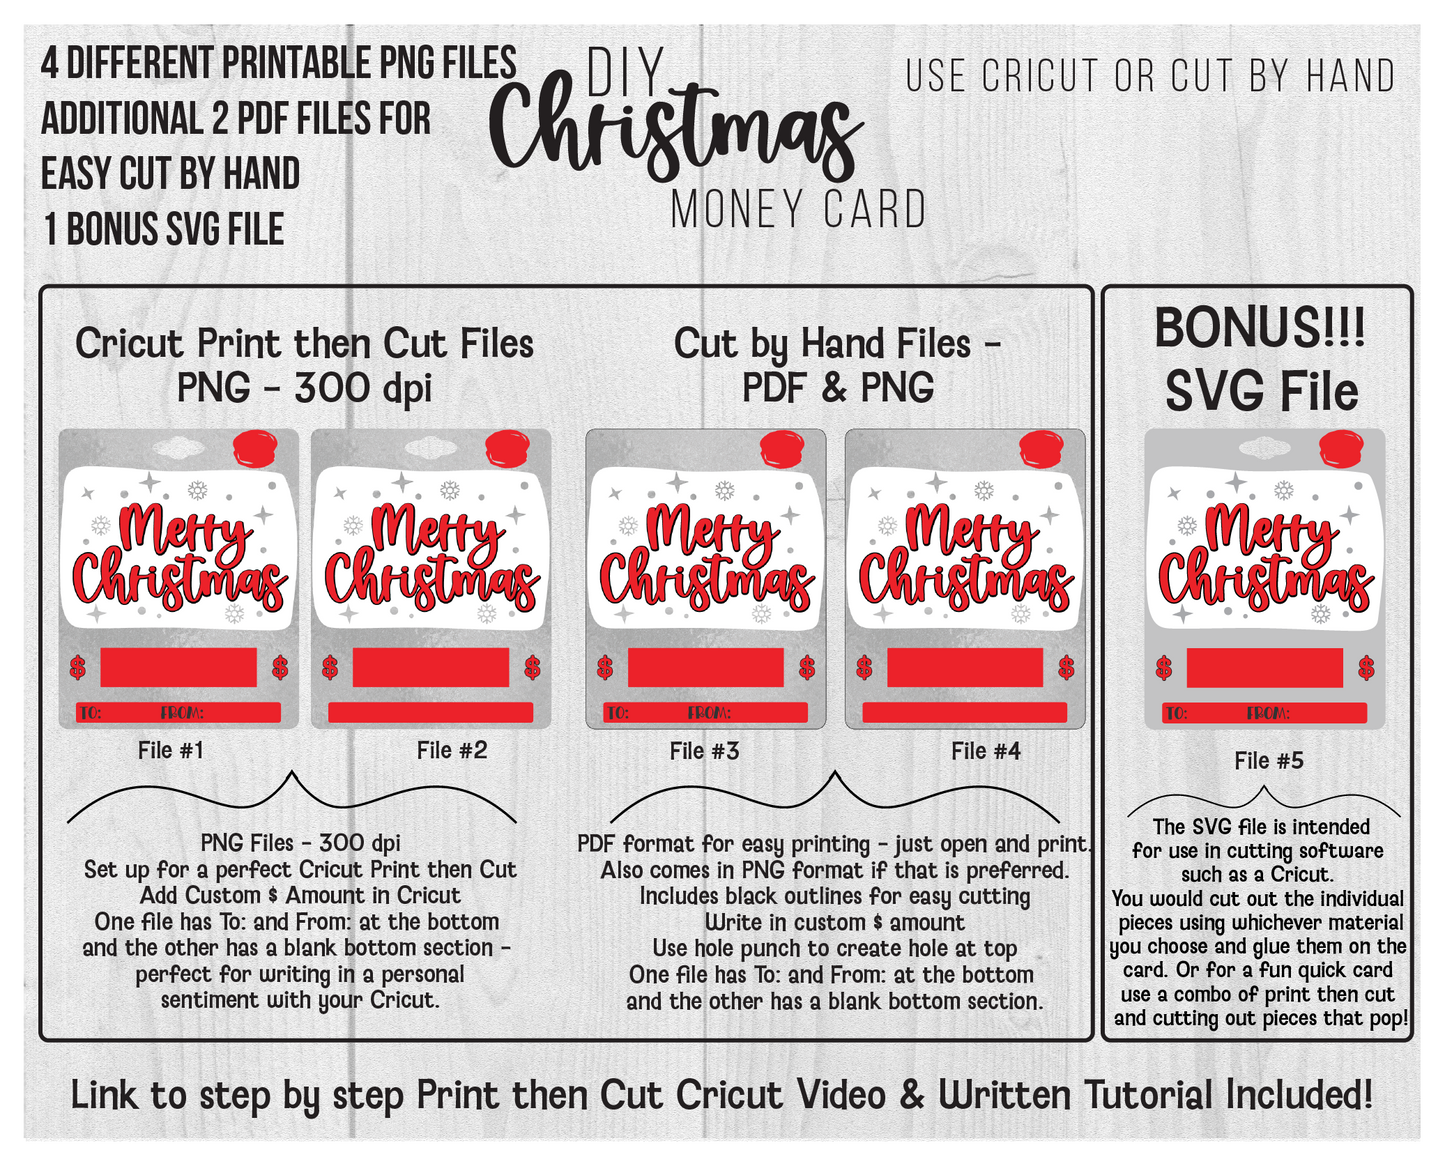 Printable Christmas  Merry Christmas Lip Balm Money Card Template